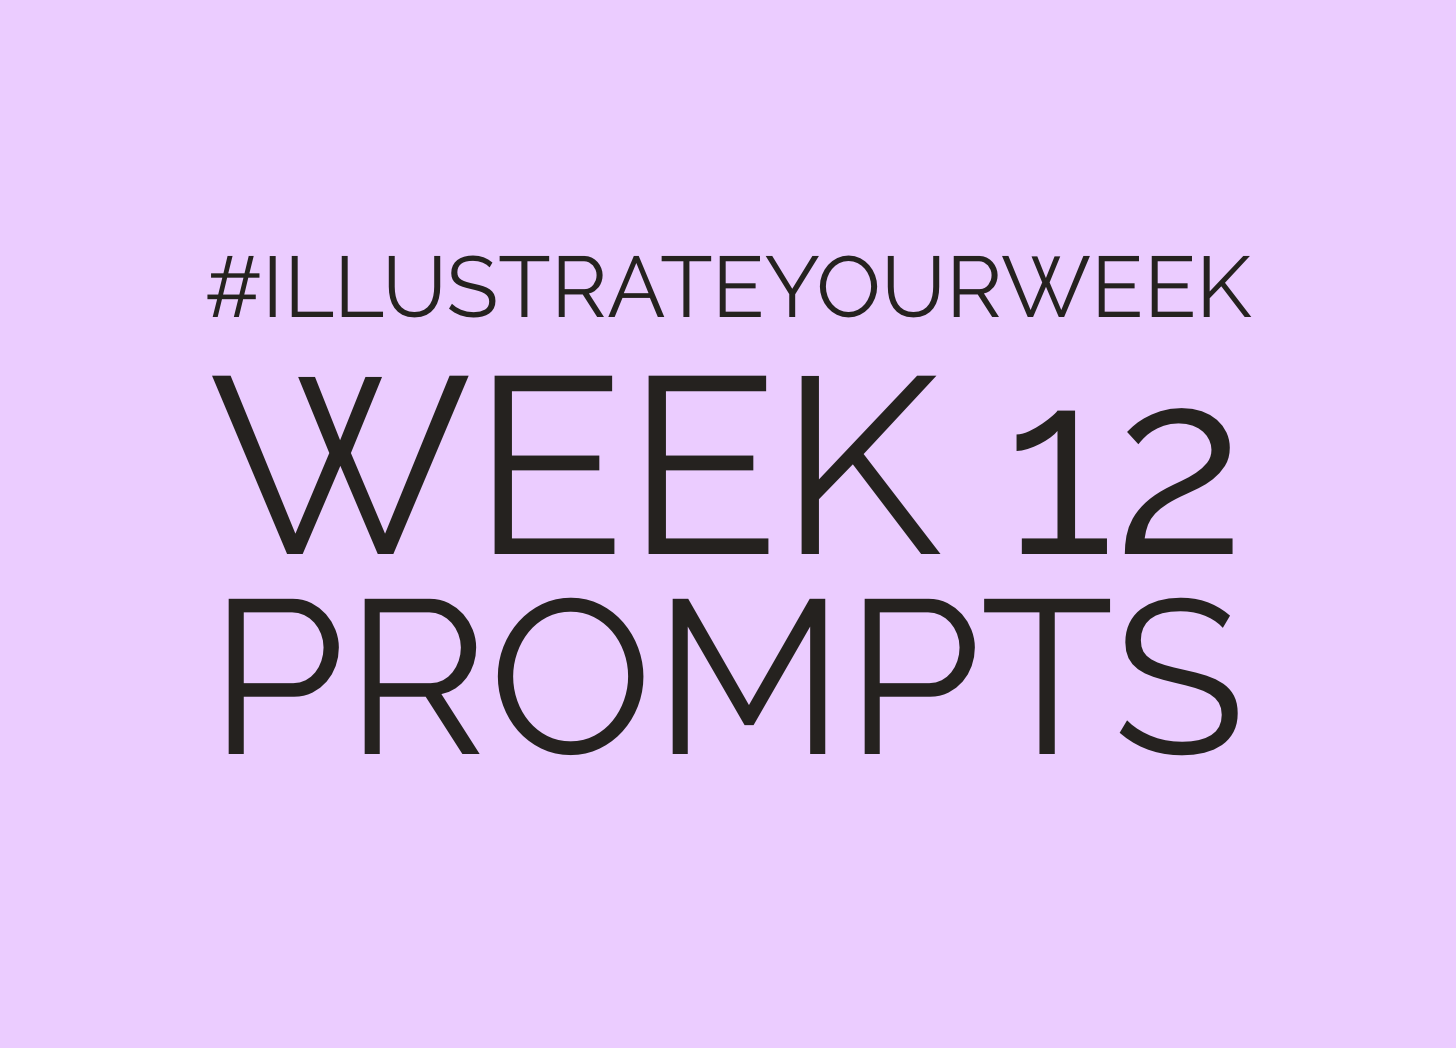 Illustrate Your Week Week 12 Prompts